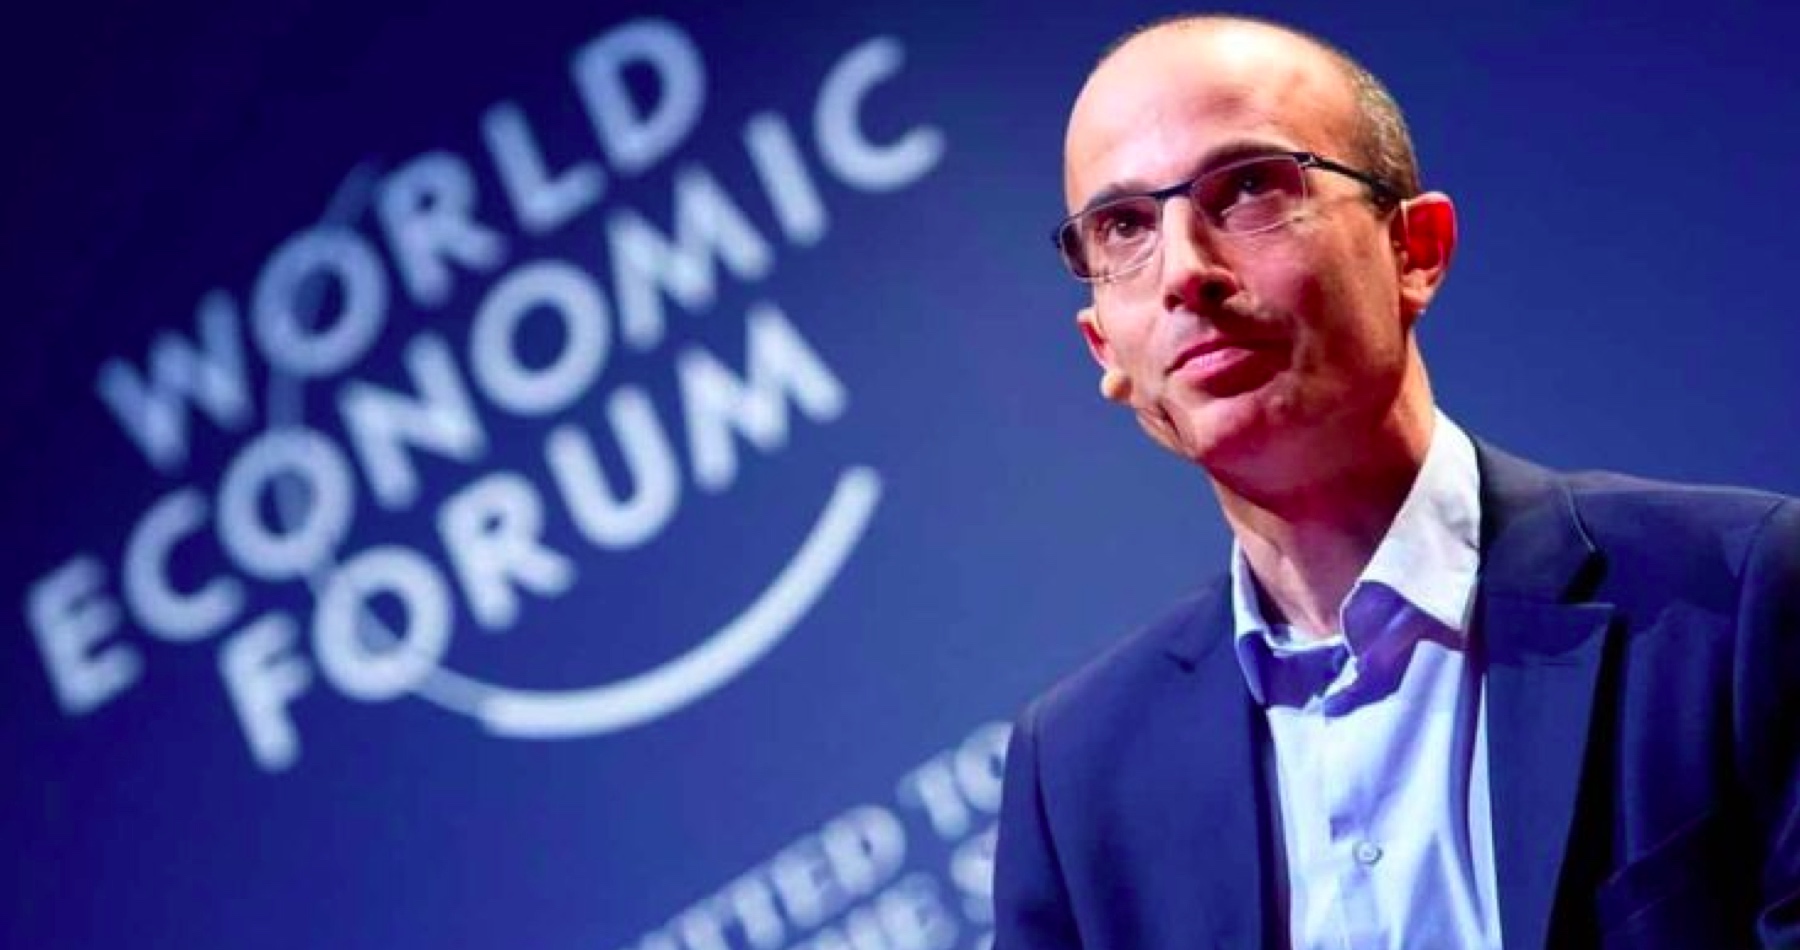 Poradce Světového ekonomického fóra Harari: „Většinu populace nepotřebujeme“